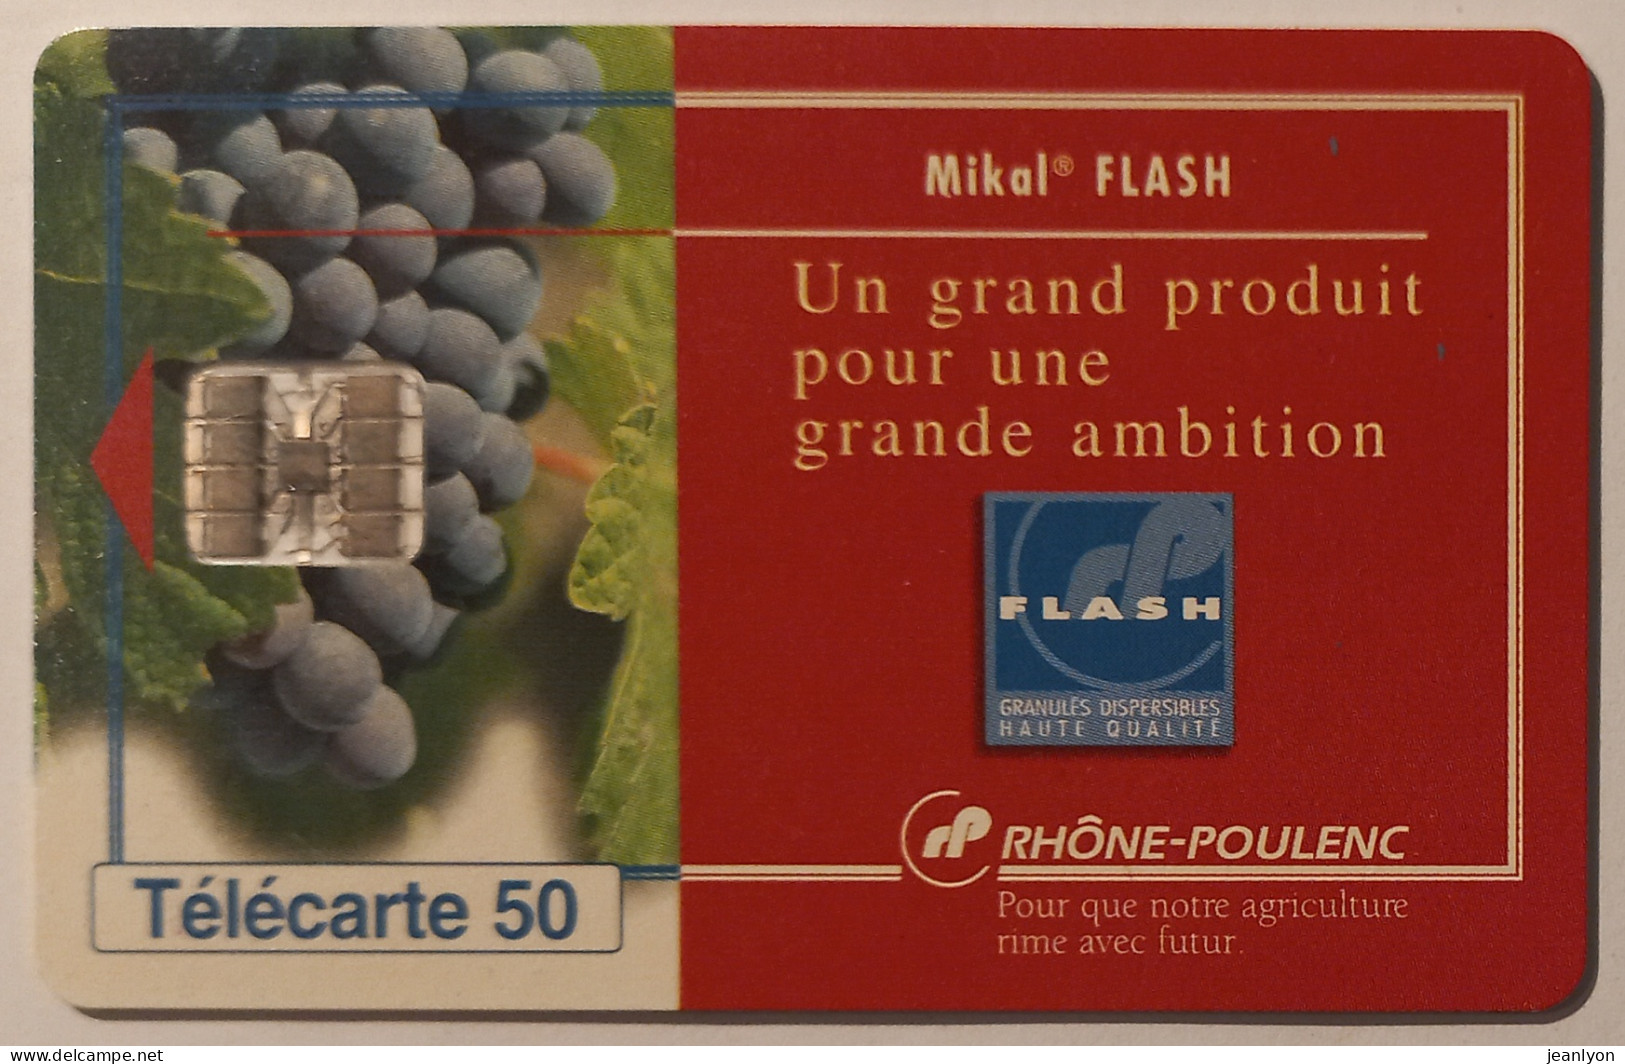 RHONE POULENC - MIKAL FLASH - Raisin / Vigne / Vin - Télécarte 50 Privée Publique - 50 Unités   